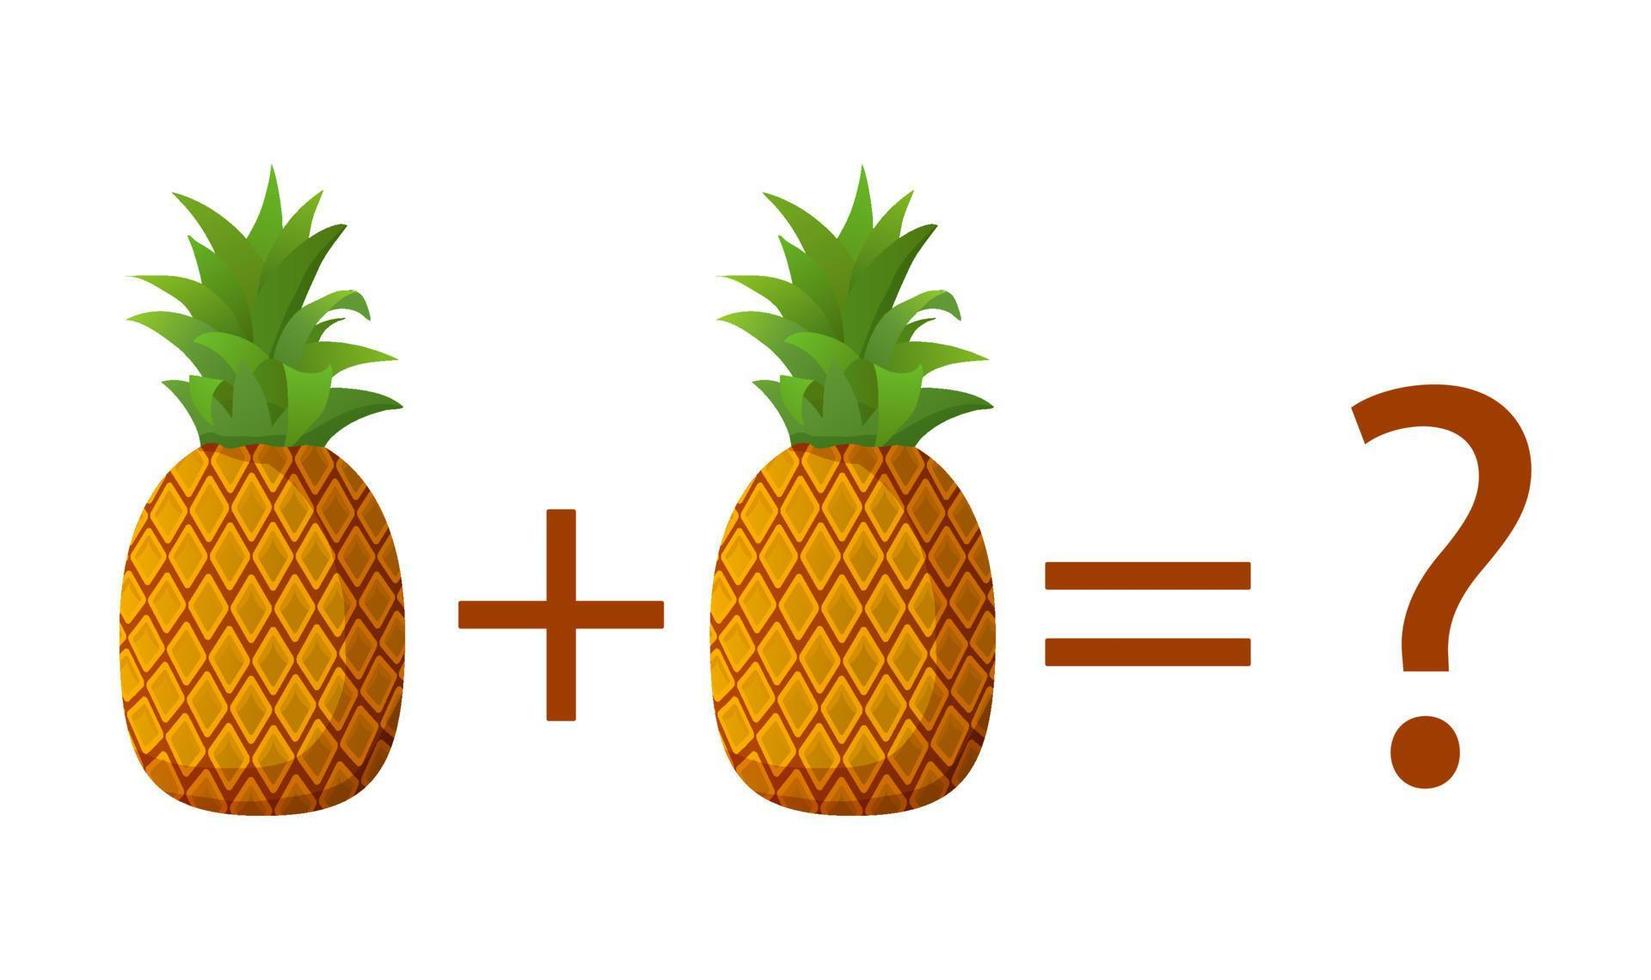 tellen spel voor peuter- kinderen. onderwijs een wiskundig spel.kindergarten spel tellen fruit ananas.plat vector illustratie.